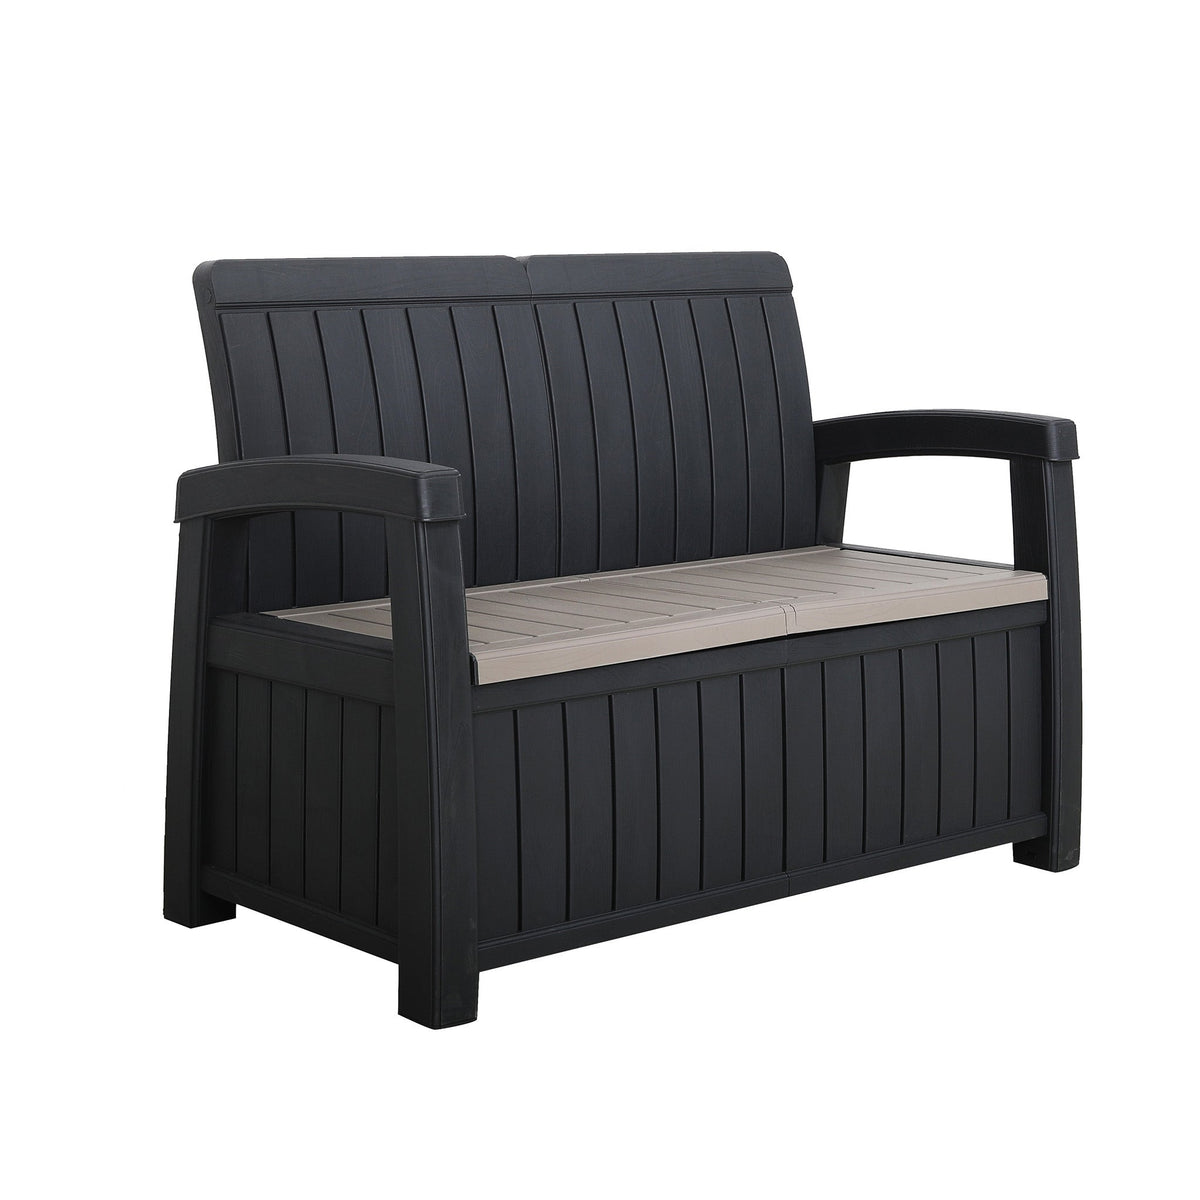 Faro Black 4 Seat Garden Lounge Set 2 Seater Bench